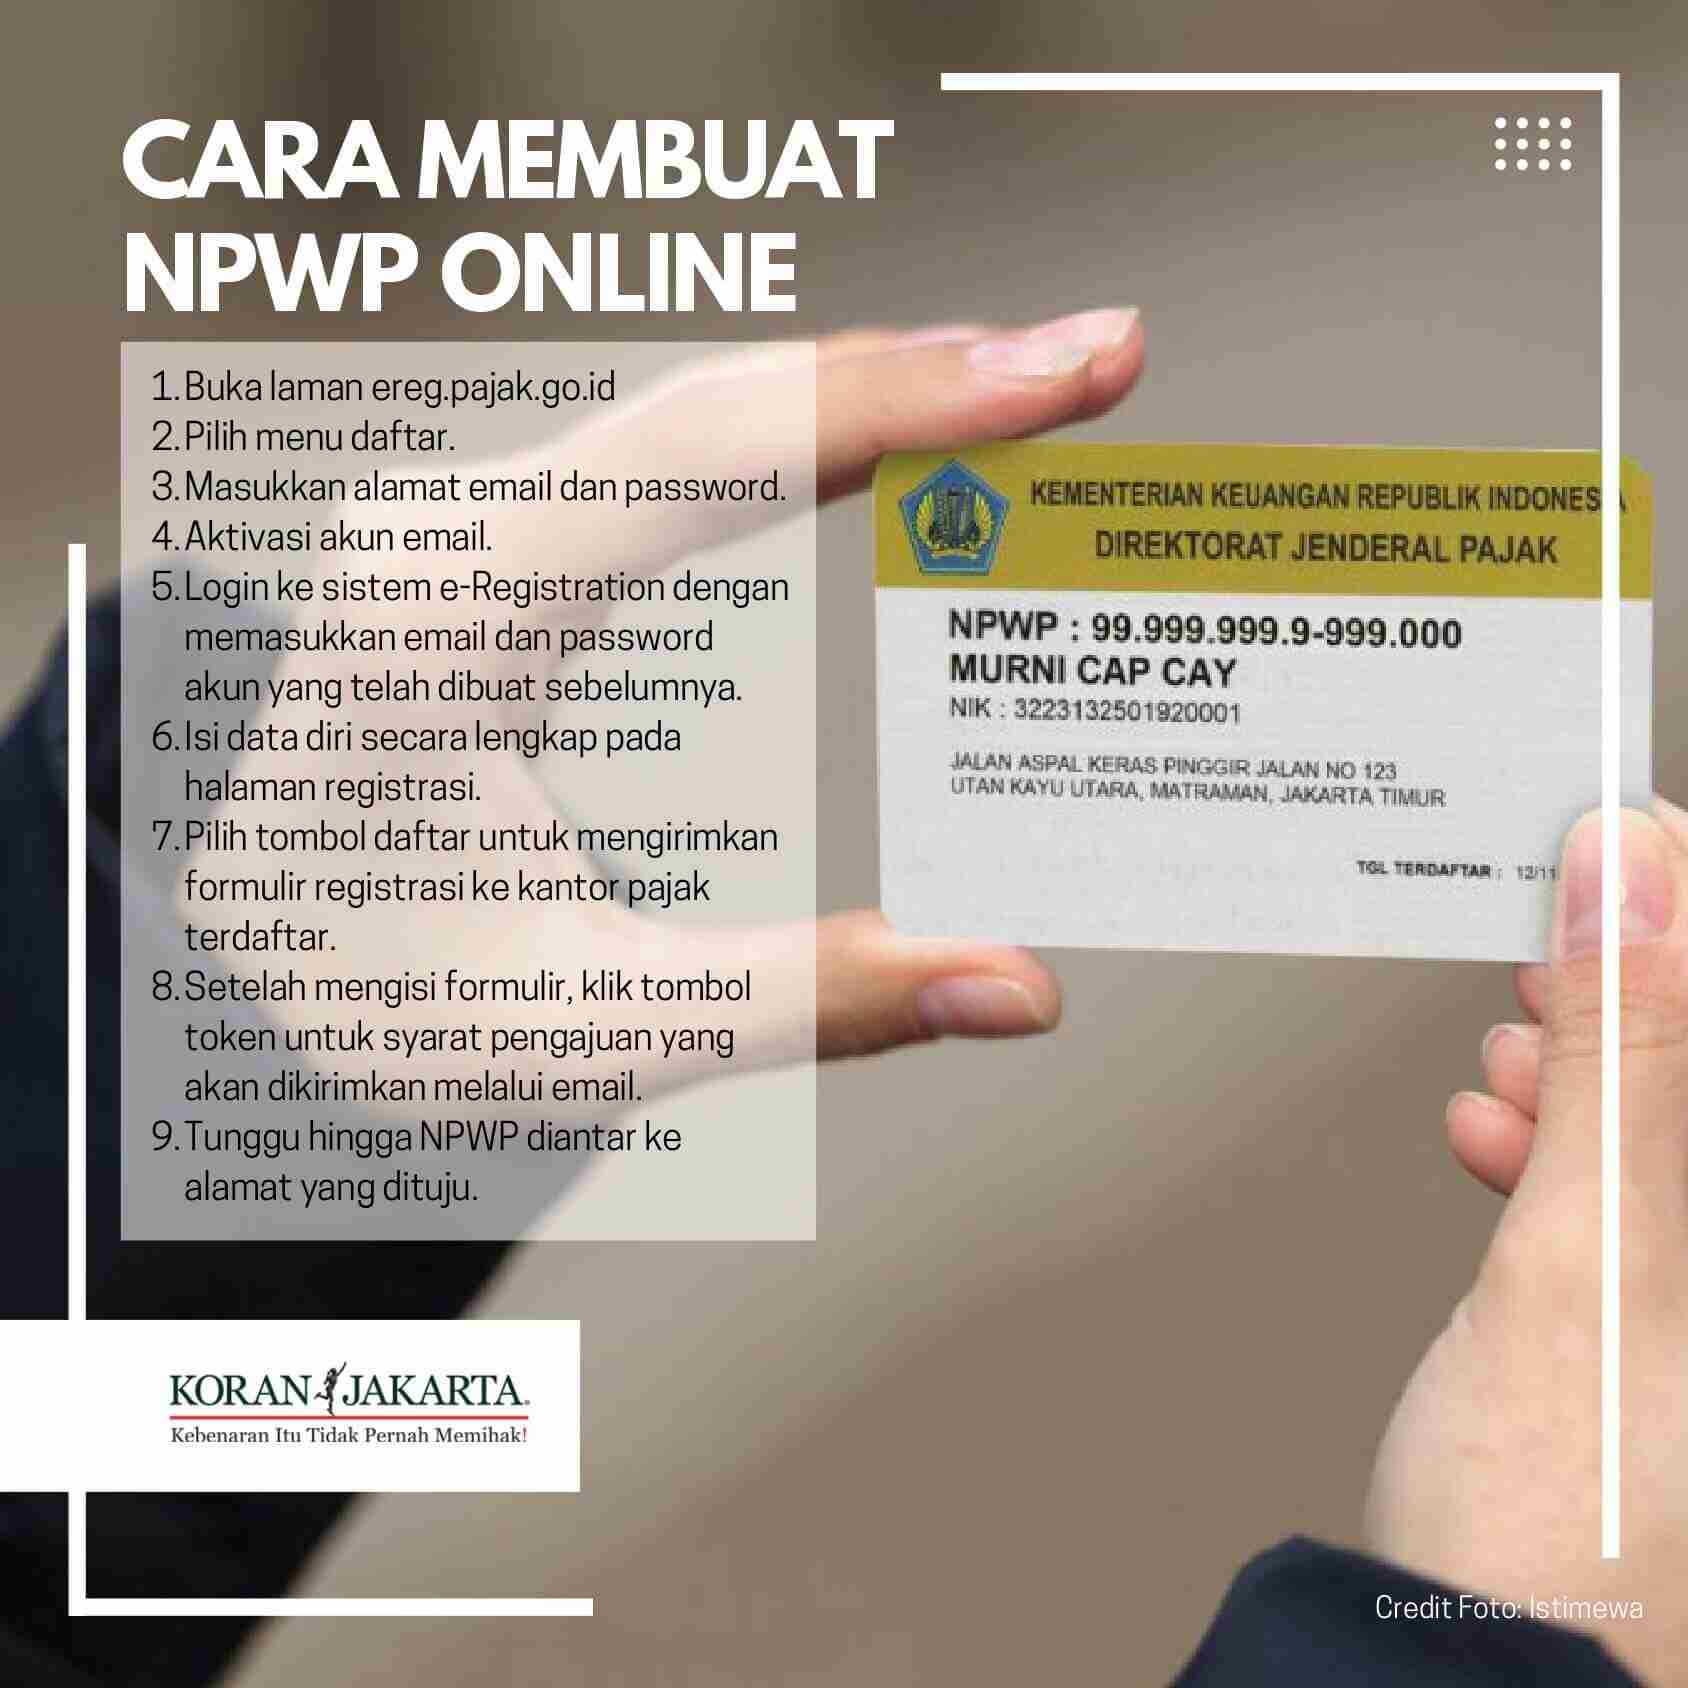 Cara Mudah Membuat NPWP Online - Infografis Koran Jakarta